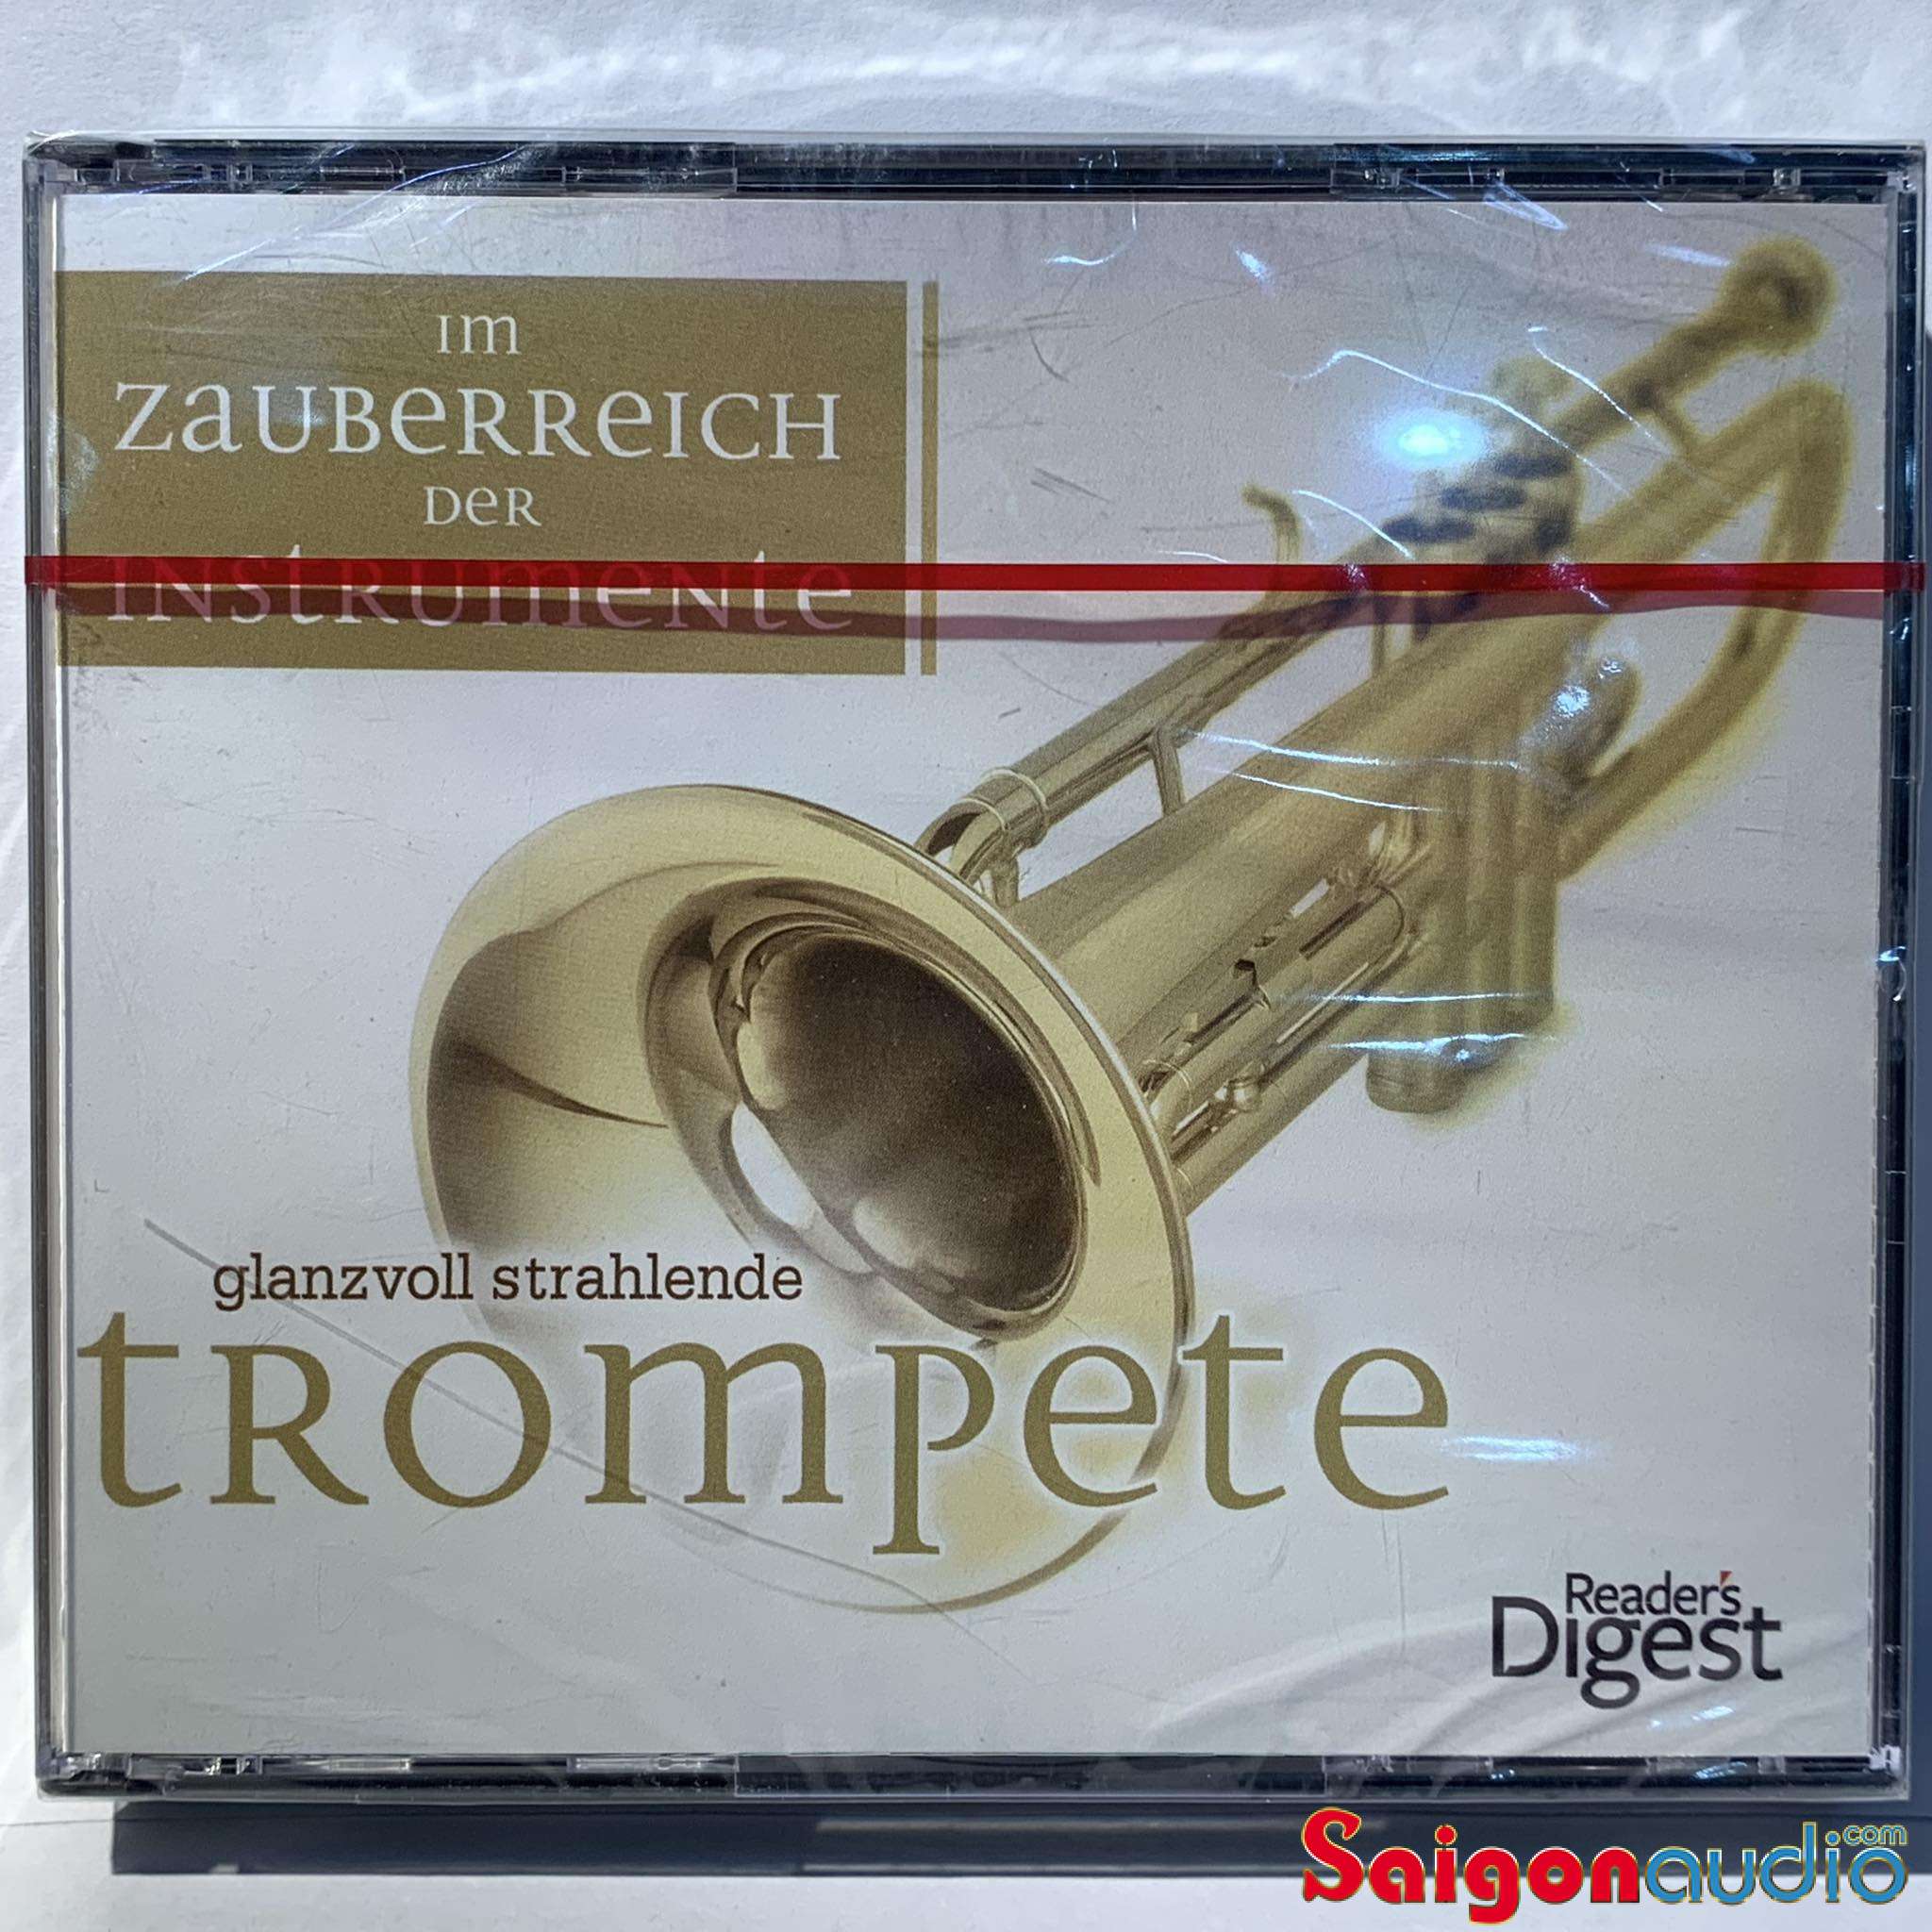 Bộ 3 CD gốc Various – Im Zauberreich Der Instrumente (Glanzvoll Strahlende Trompete) (Free ship khi mua 2 đĩa CD cùng hoặc khác loại)